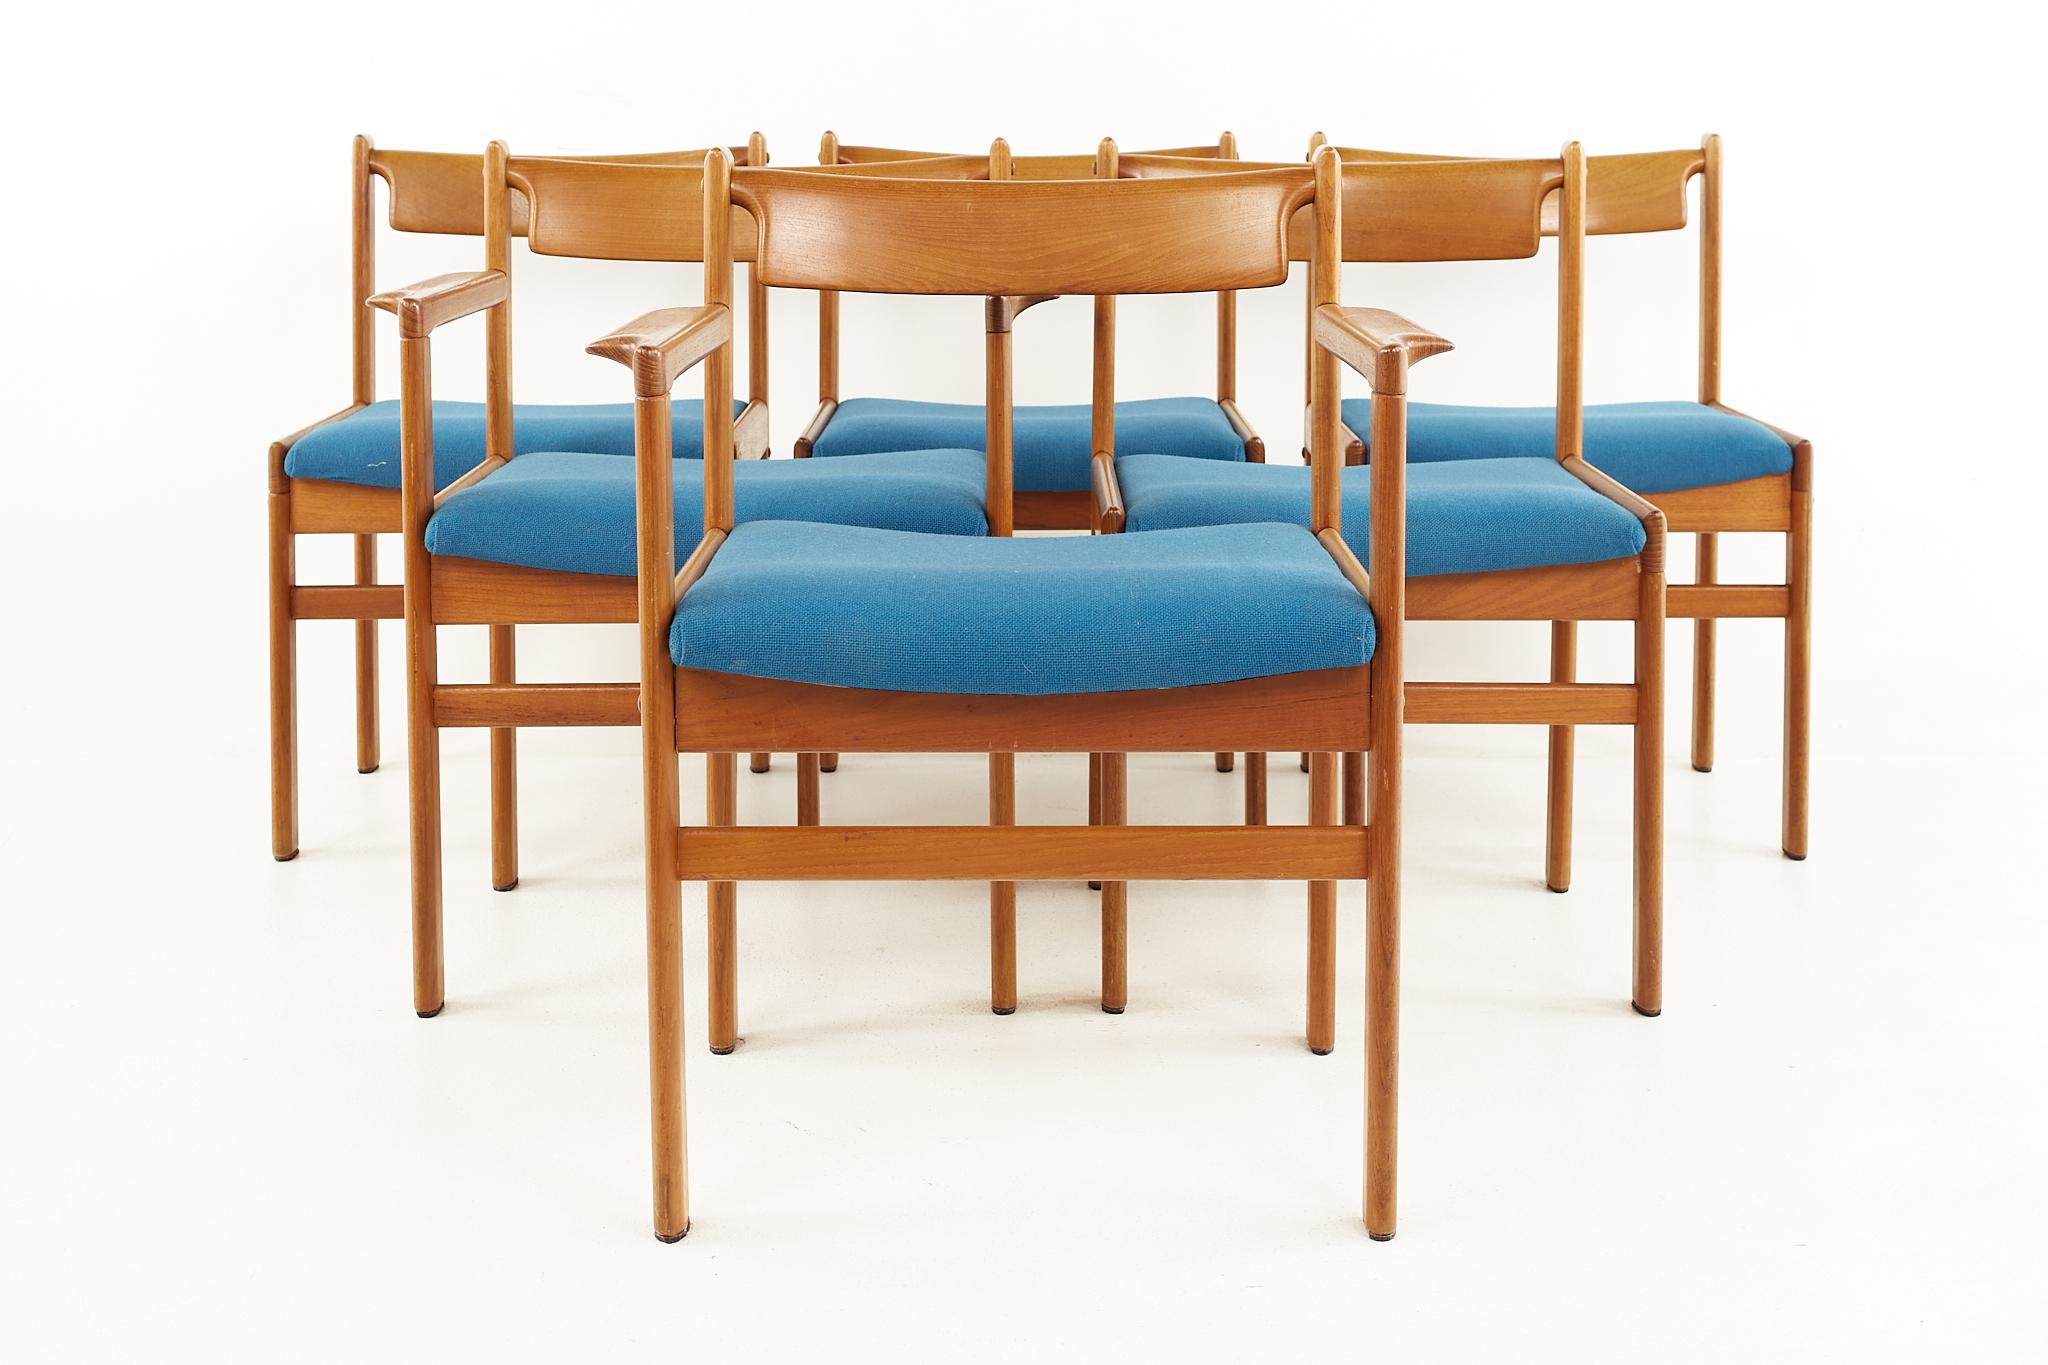 HW Klein For Bramin Mobler Dänische Teakholz Esszimmerstühle aus der Mitte des Jahrhunderts - 6er Set

Jeder Stuhl misst: 19 breit x 19 tief x 29,5 hoch, mit einer Sitzhöhe von 17 Zoll und einer Armhöhe von 24,5 Zoll; der Kapitänsstuhl ist 24 Zoll